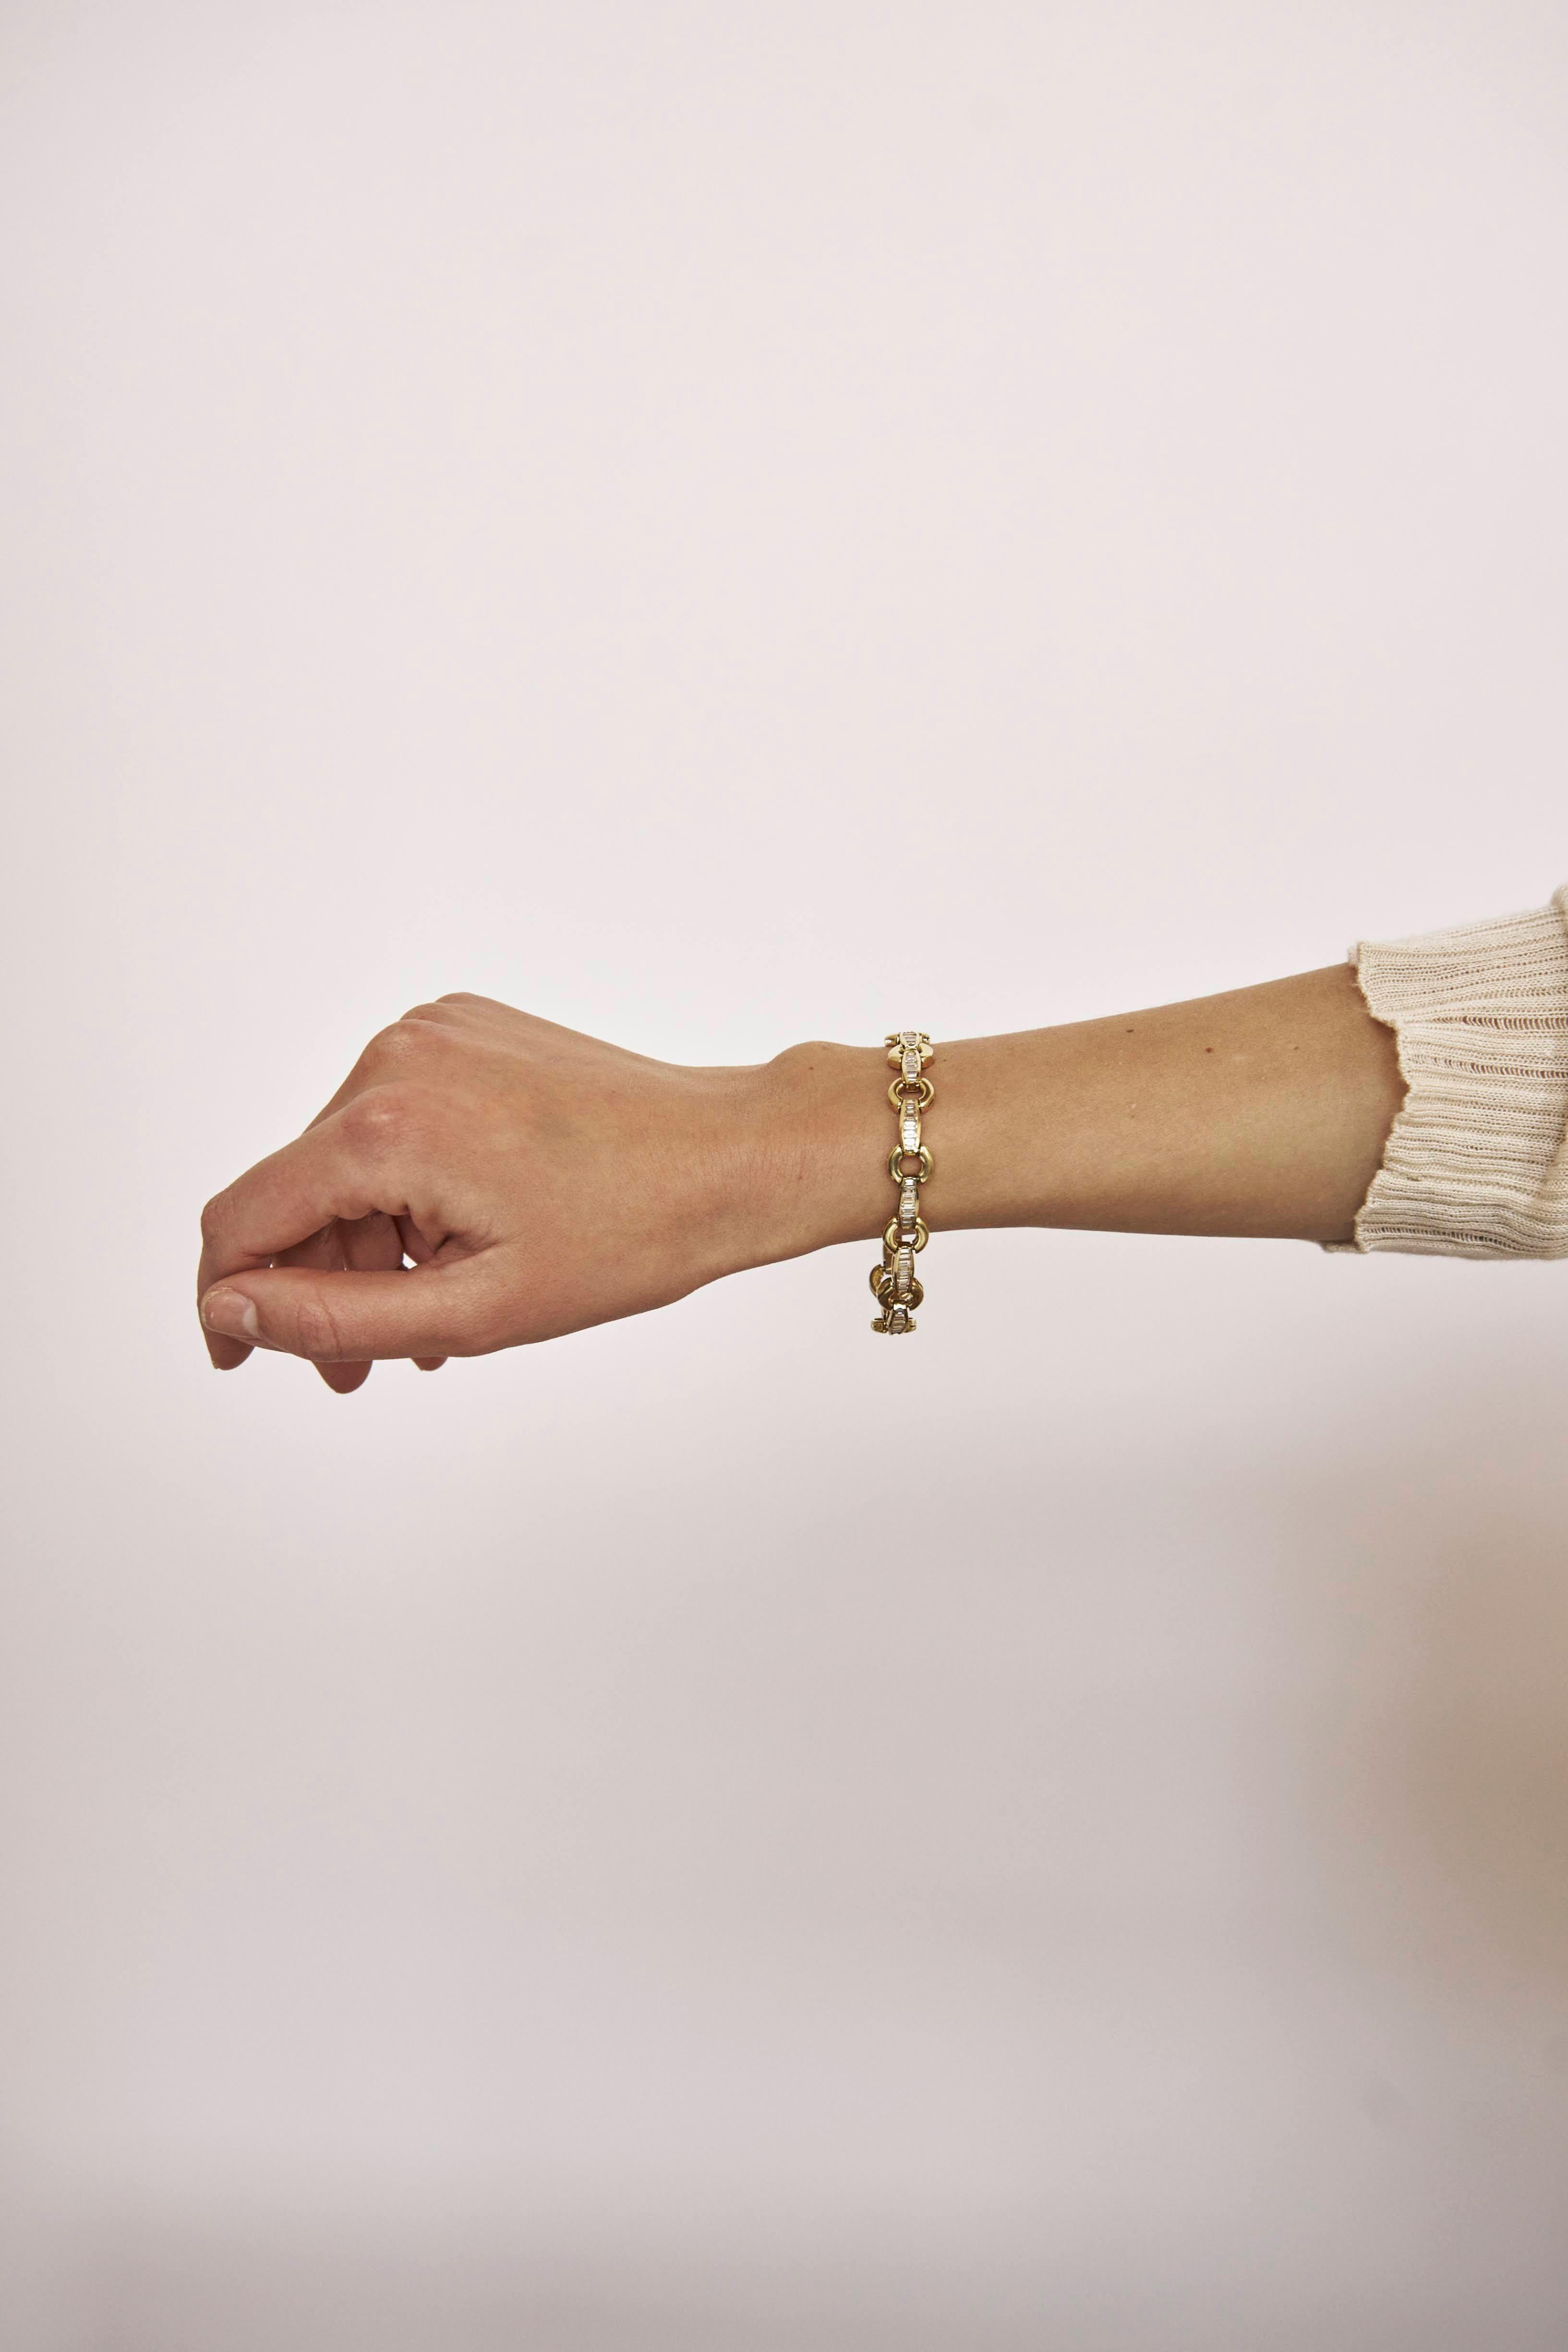 Ein Armband im Vintage-Stil, das Sie nie wieder ablegen werden. Glücklicherweise erlaubt das 14-karätige Gelbgold, aus dem es gefertigt ist, dies zu tun! Das Vintage Link Bracelet ist ein perfektes, stapelbares Armband und auf seine eigene Art und